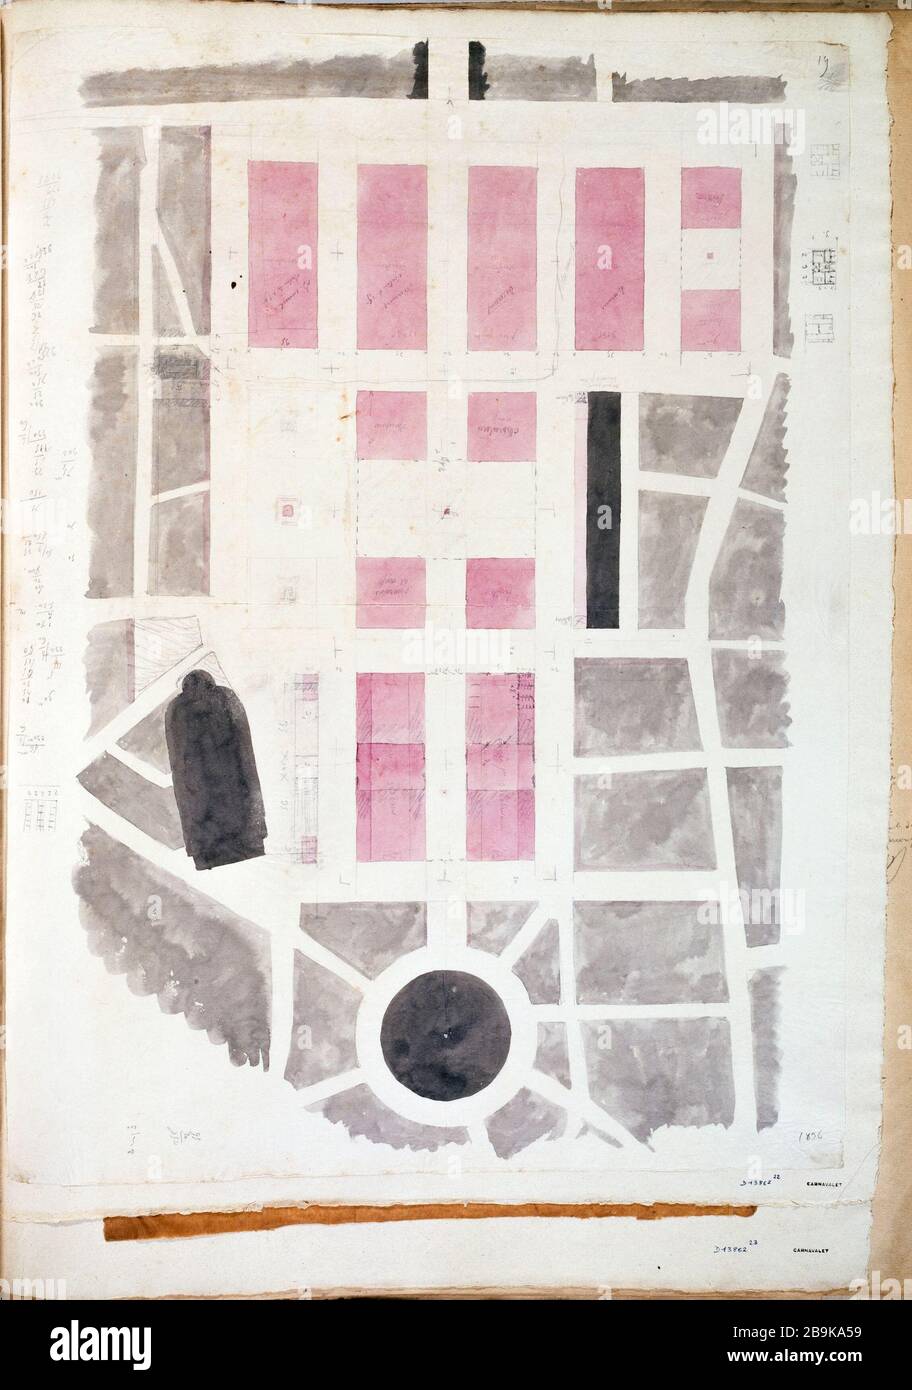 Map of the Market Hall with the nearby streets Charles Rohault de Fleury (1801-1875). Plan des Halles centrales avec les rues avoisinantes. Crayon, lavis gris et rose, vers 1836. Paris, musée Carnavalet. Stock Photo